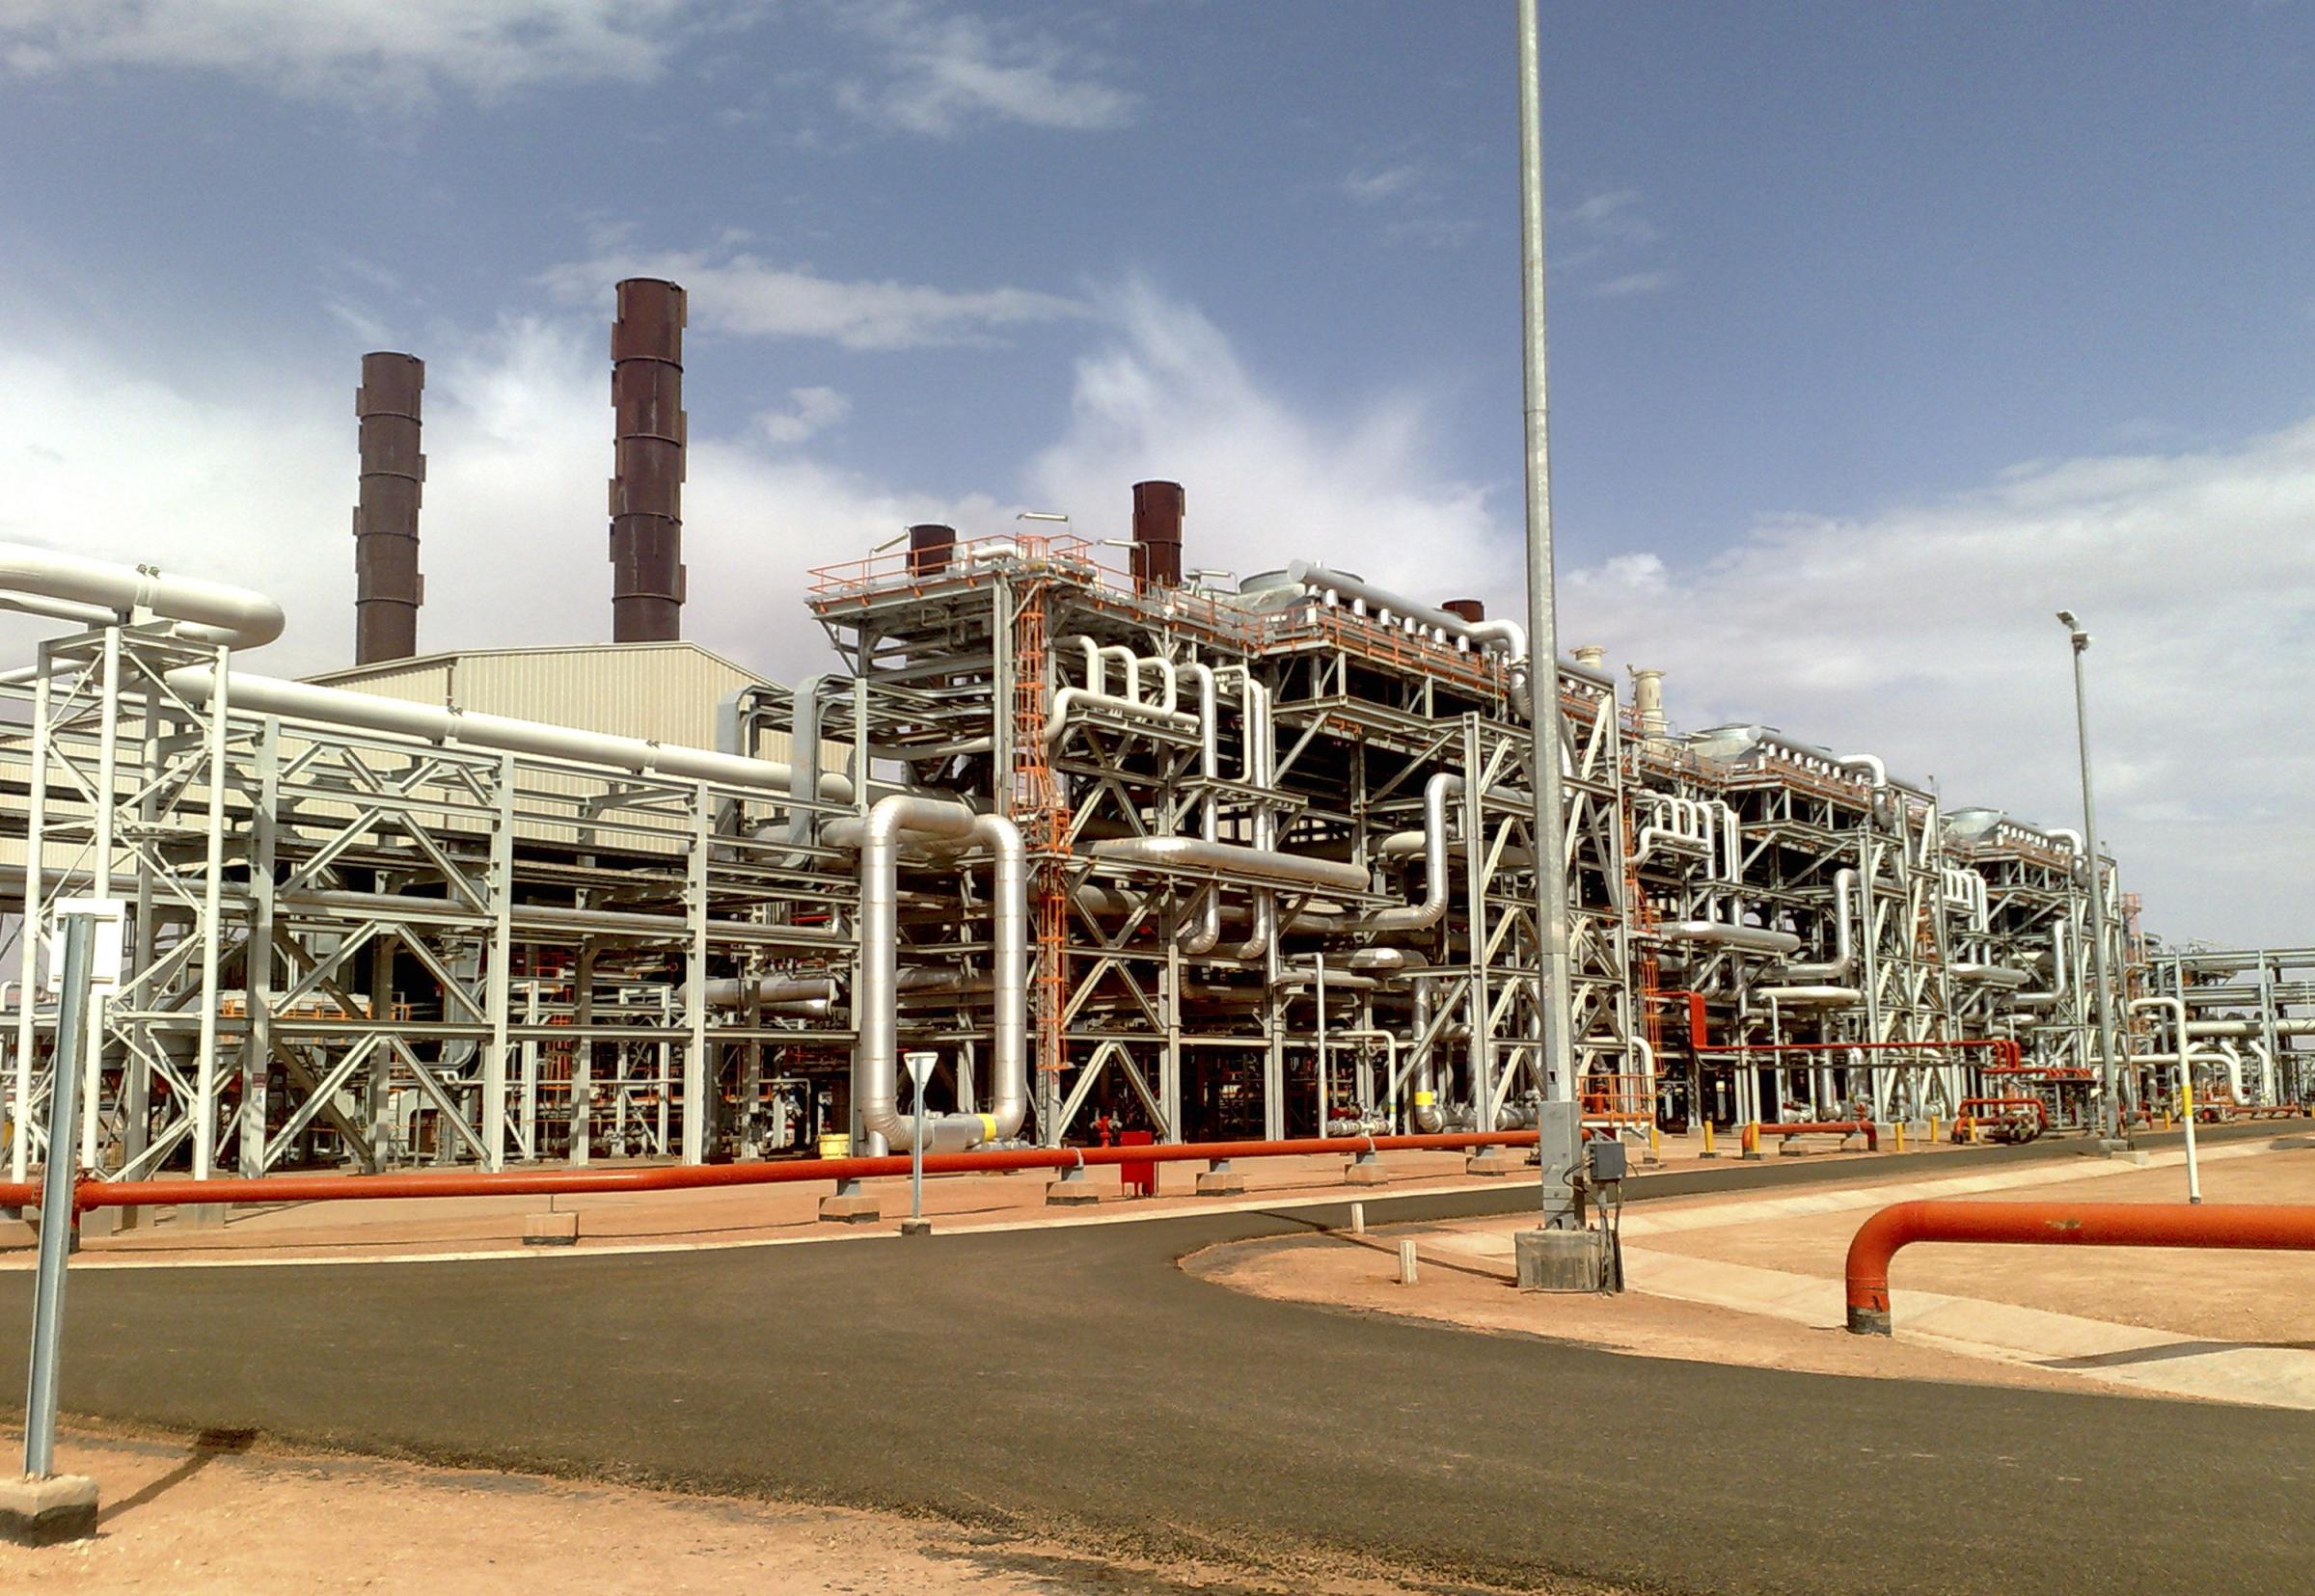 Avrupa’nın Rus gazına alternatif kaynak arayışlarında Afrika’da Cezayir ön plana çıkıyor